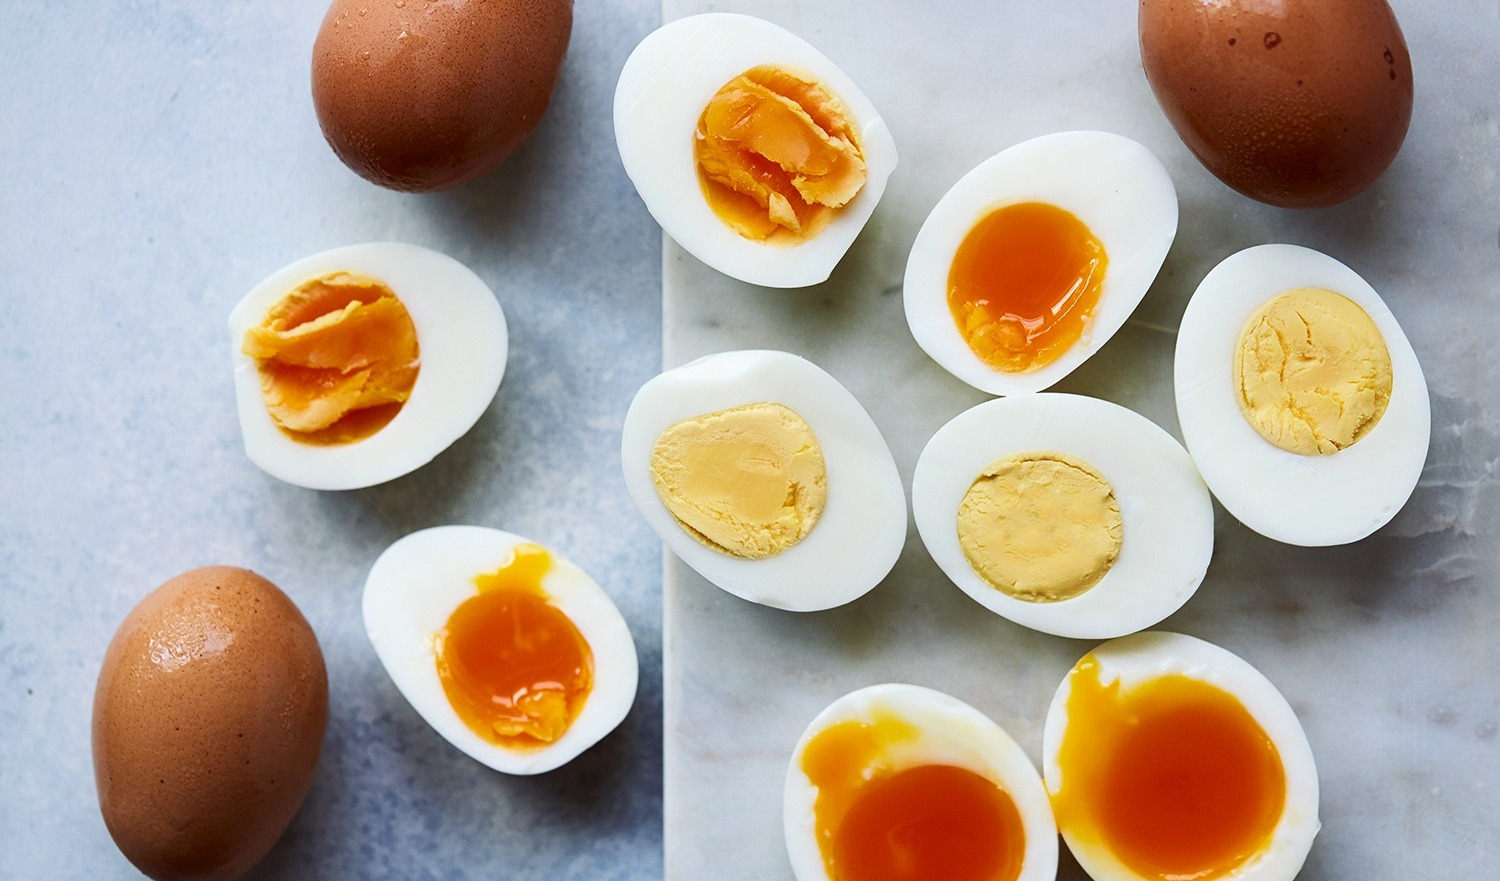 تخم مرغ پخته - از بین بردن بوی بد تخم مرغ